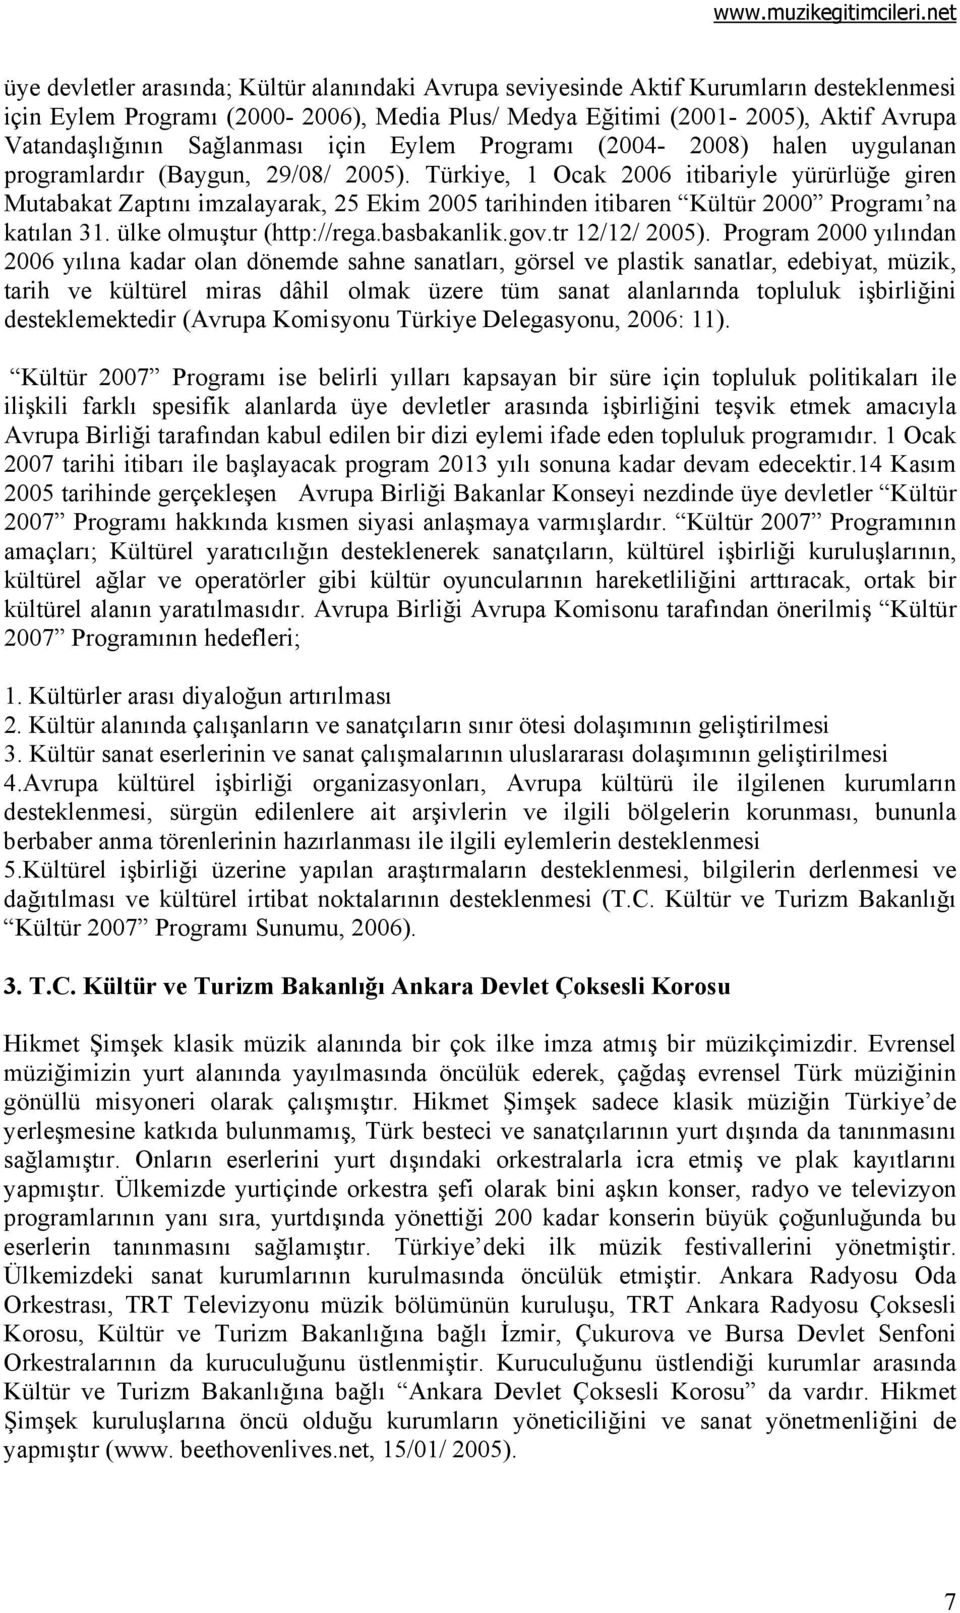 Türkiye, 1 Ocak 2006 itibariyle yürürlüğe giren Mutabakat Zaptını imzalayarak, 25 Ekim 2005 tarihinden itibaren Kültür 2000 Programı na katılan 31. ülke olmuştur (http://rega.basbakanlik.gov.